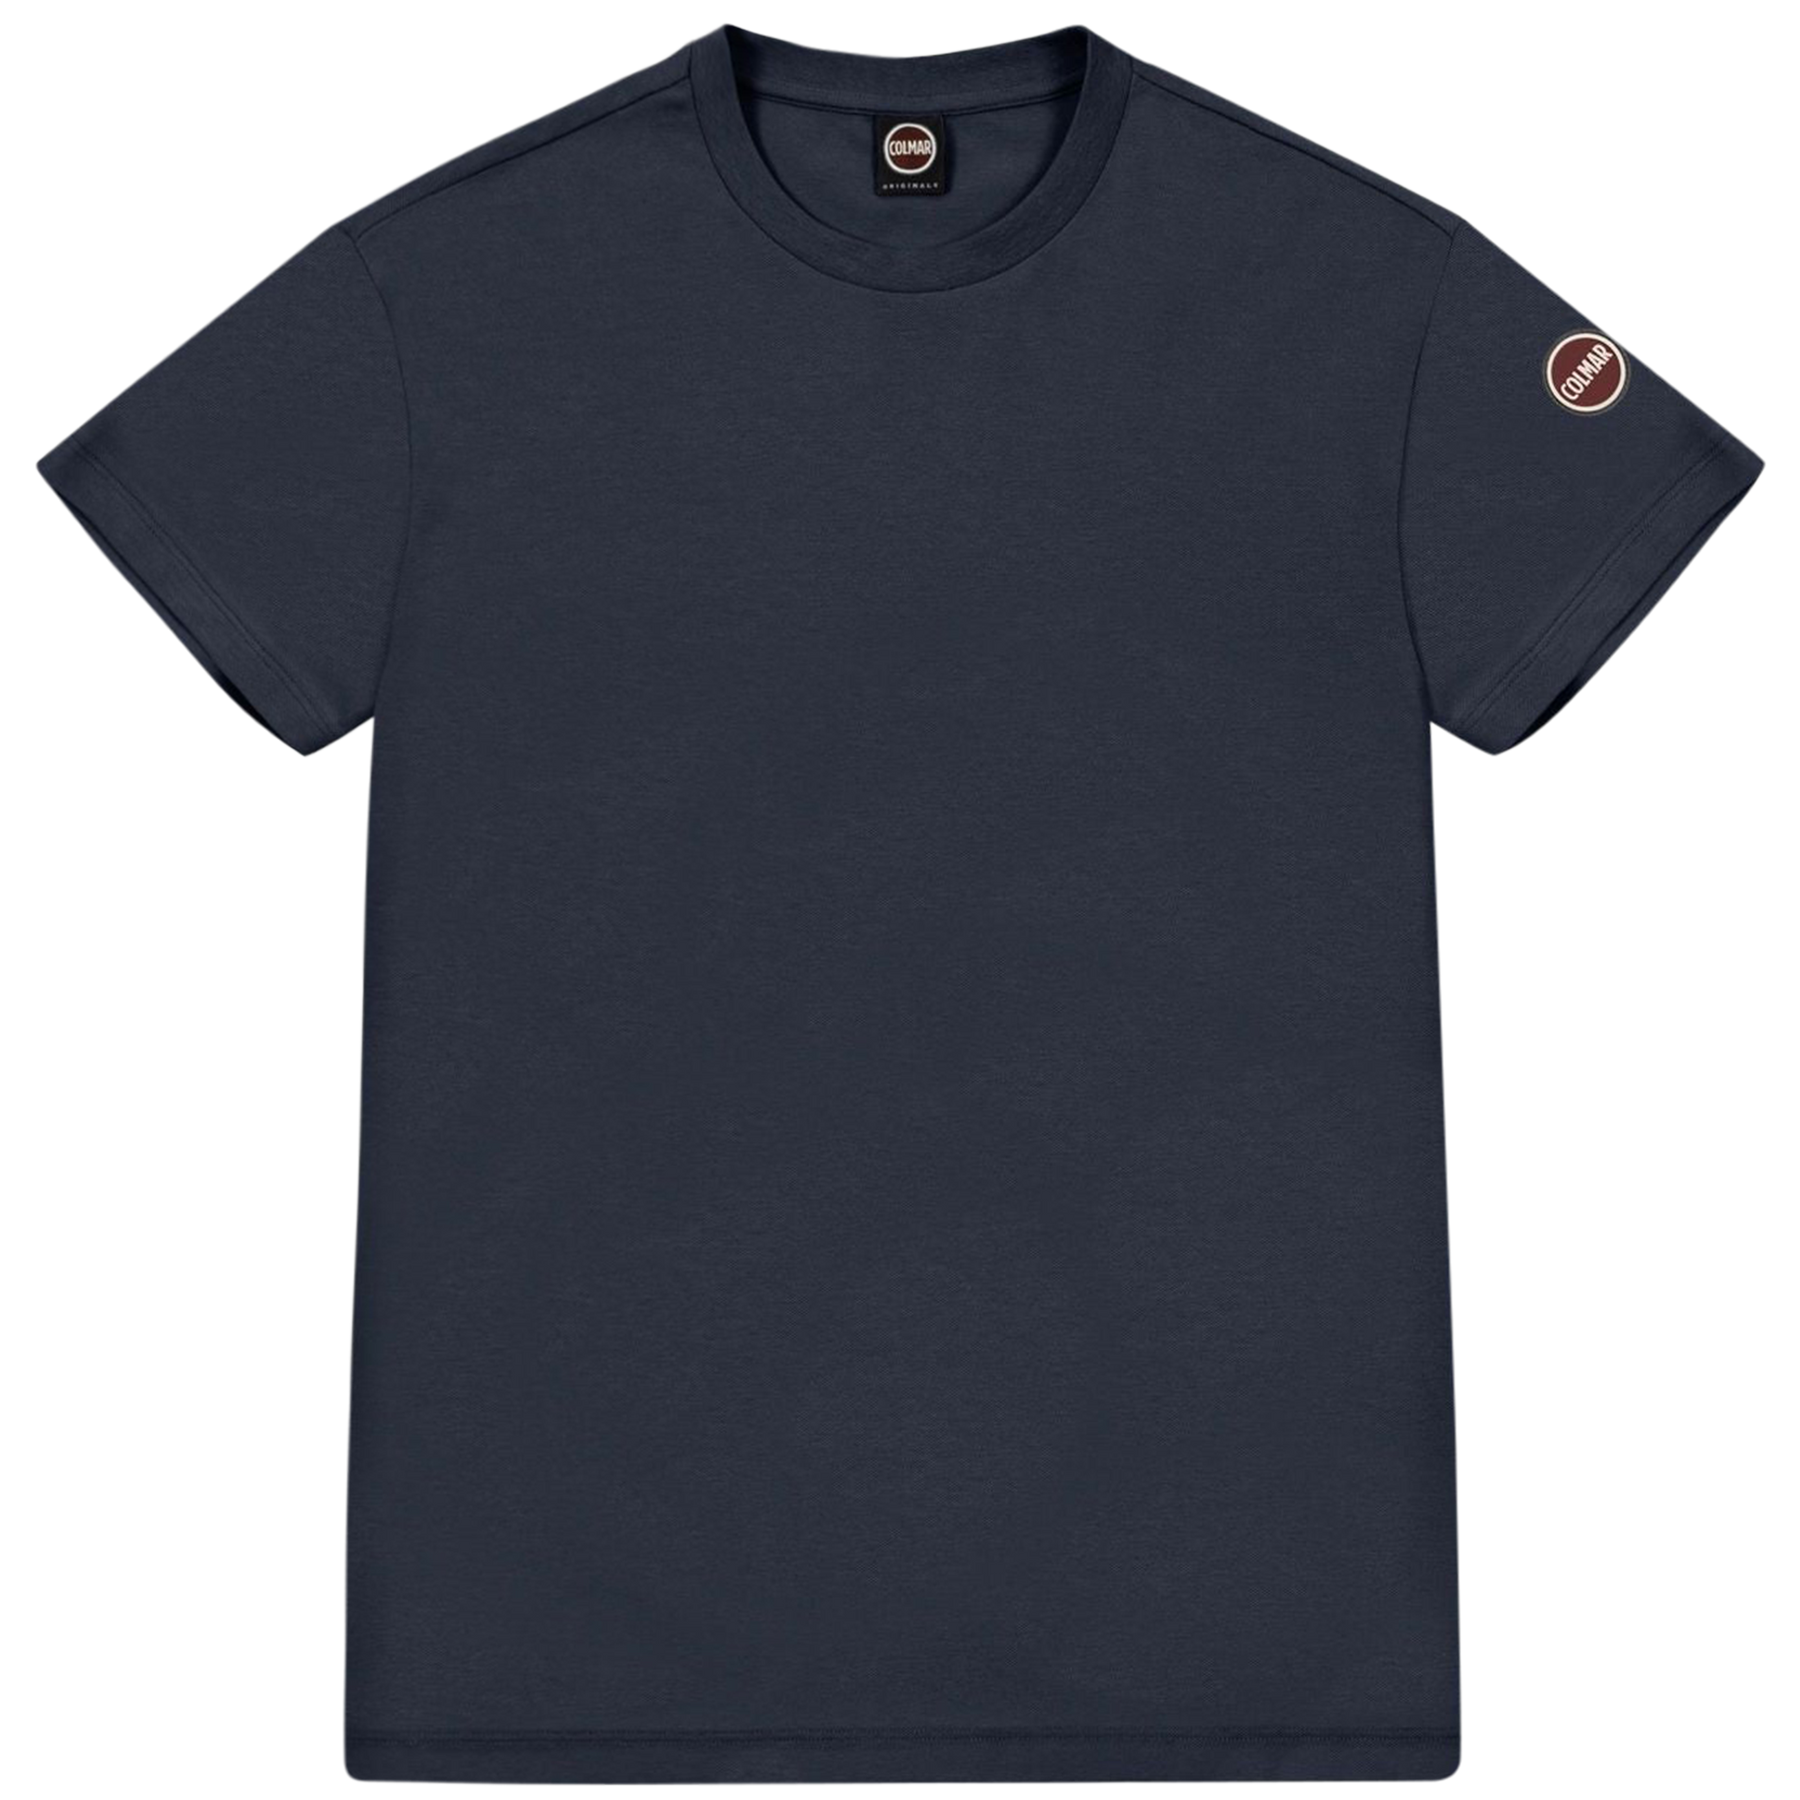 7520 Round Neck Cotton T-shirt - Navy Blue